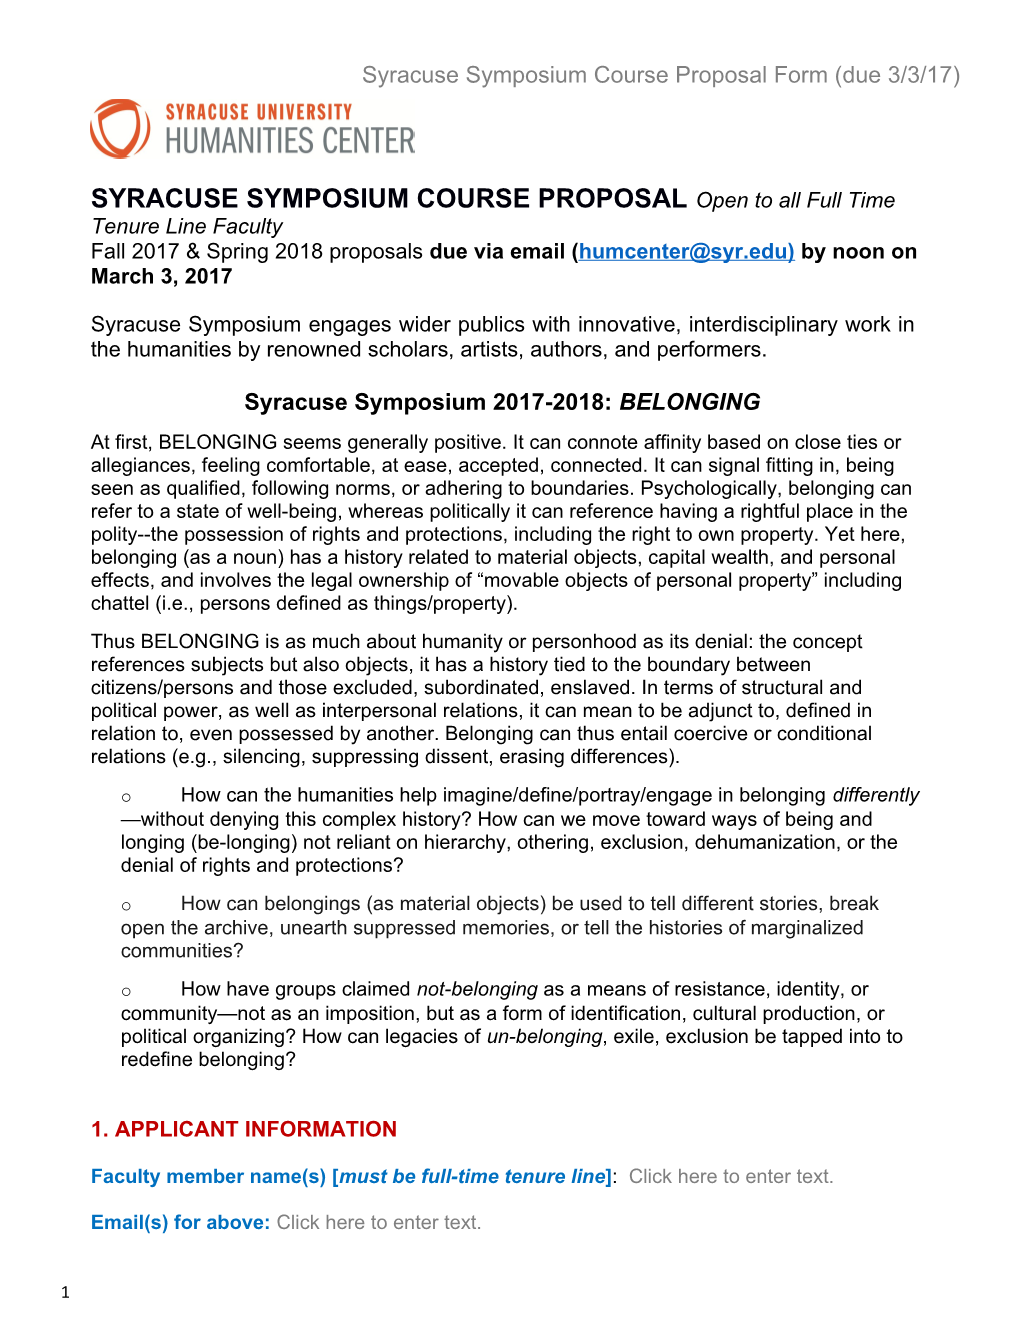 Syracuse Symposium Course Proposal Form (Due 3/3/17)